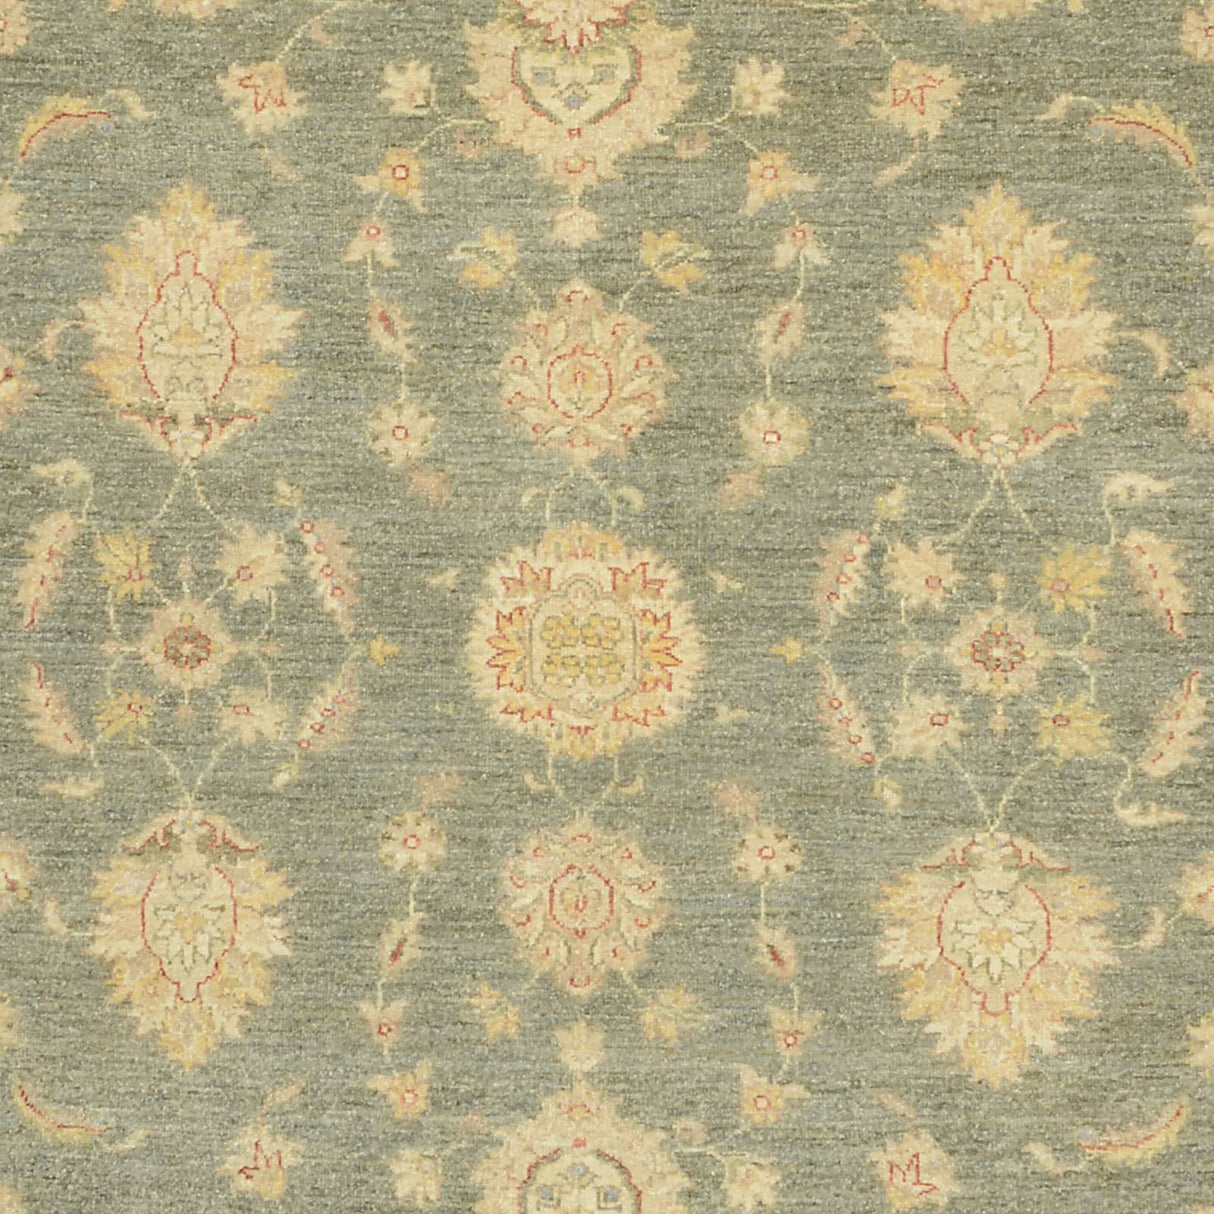 Carpetes de Ziegler Farahan | 290 x 240 cm